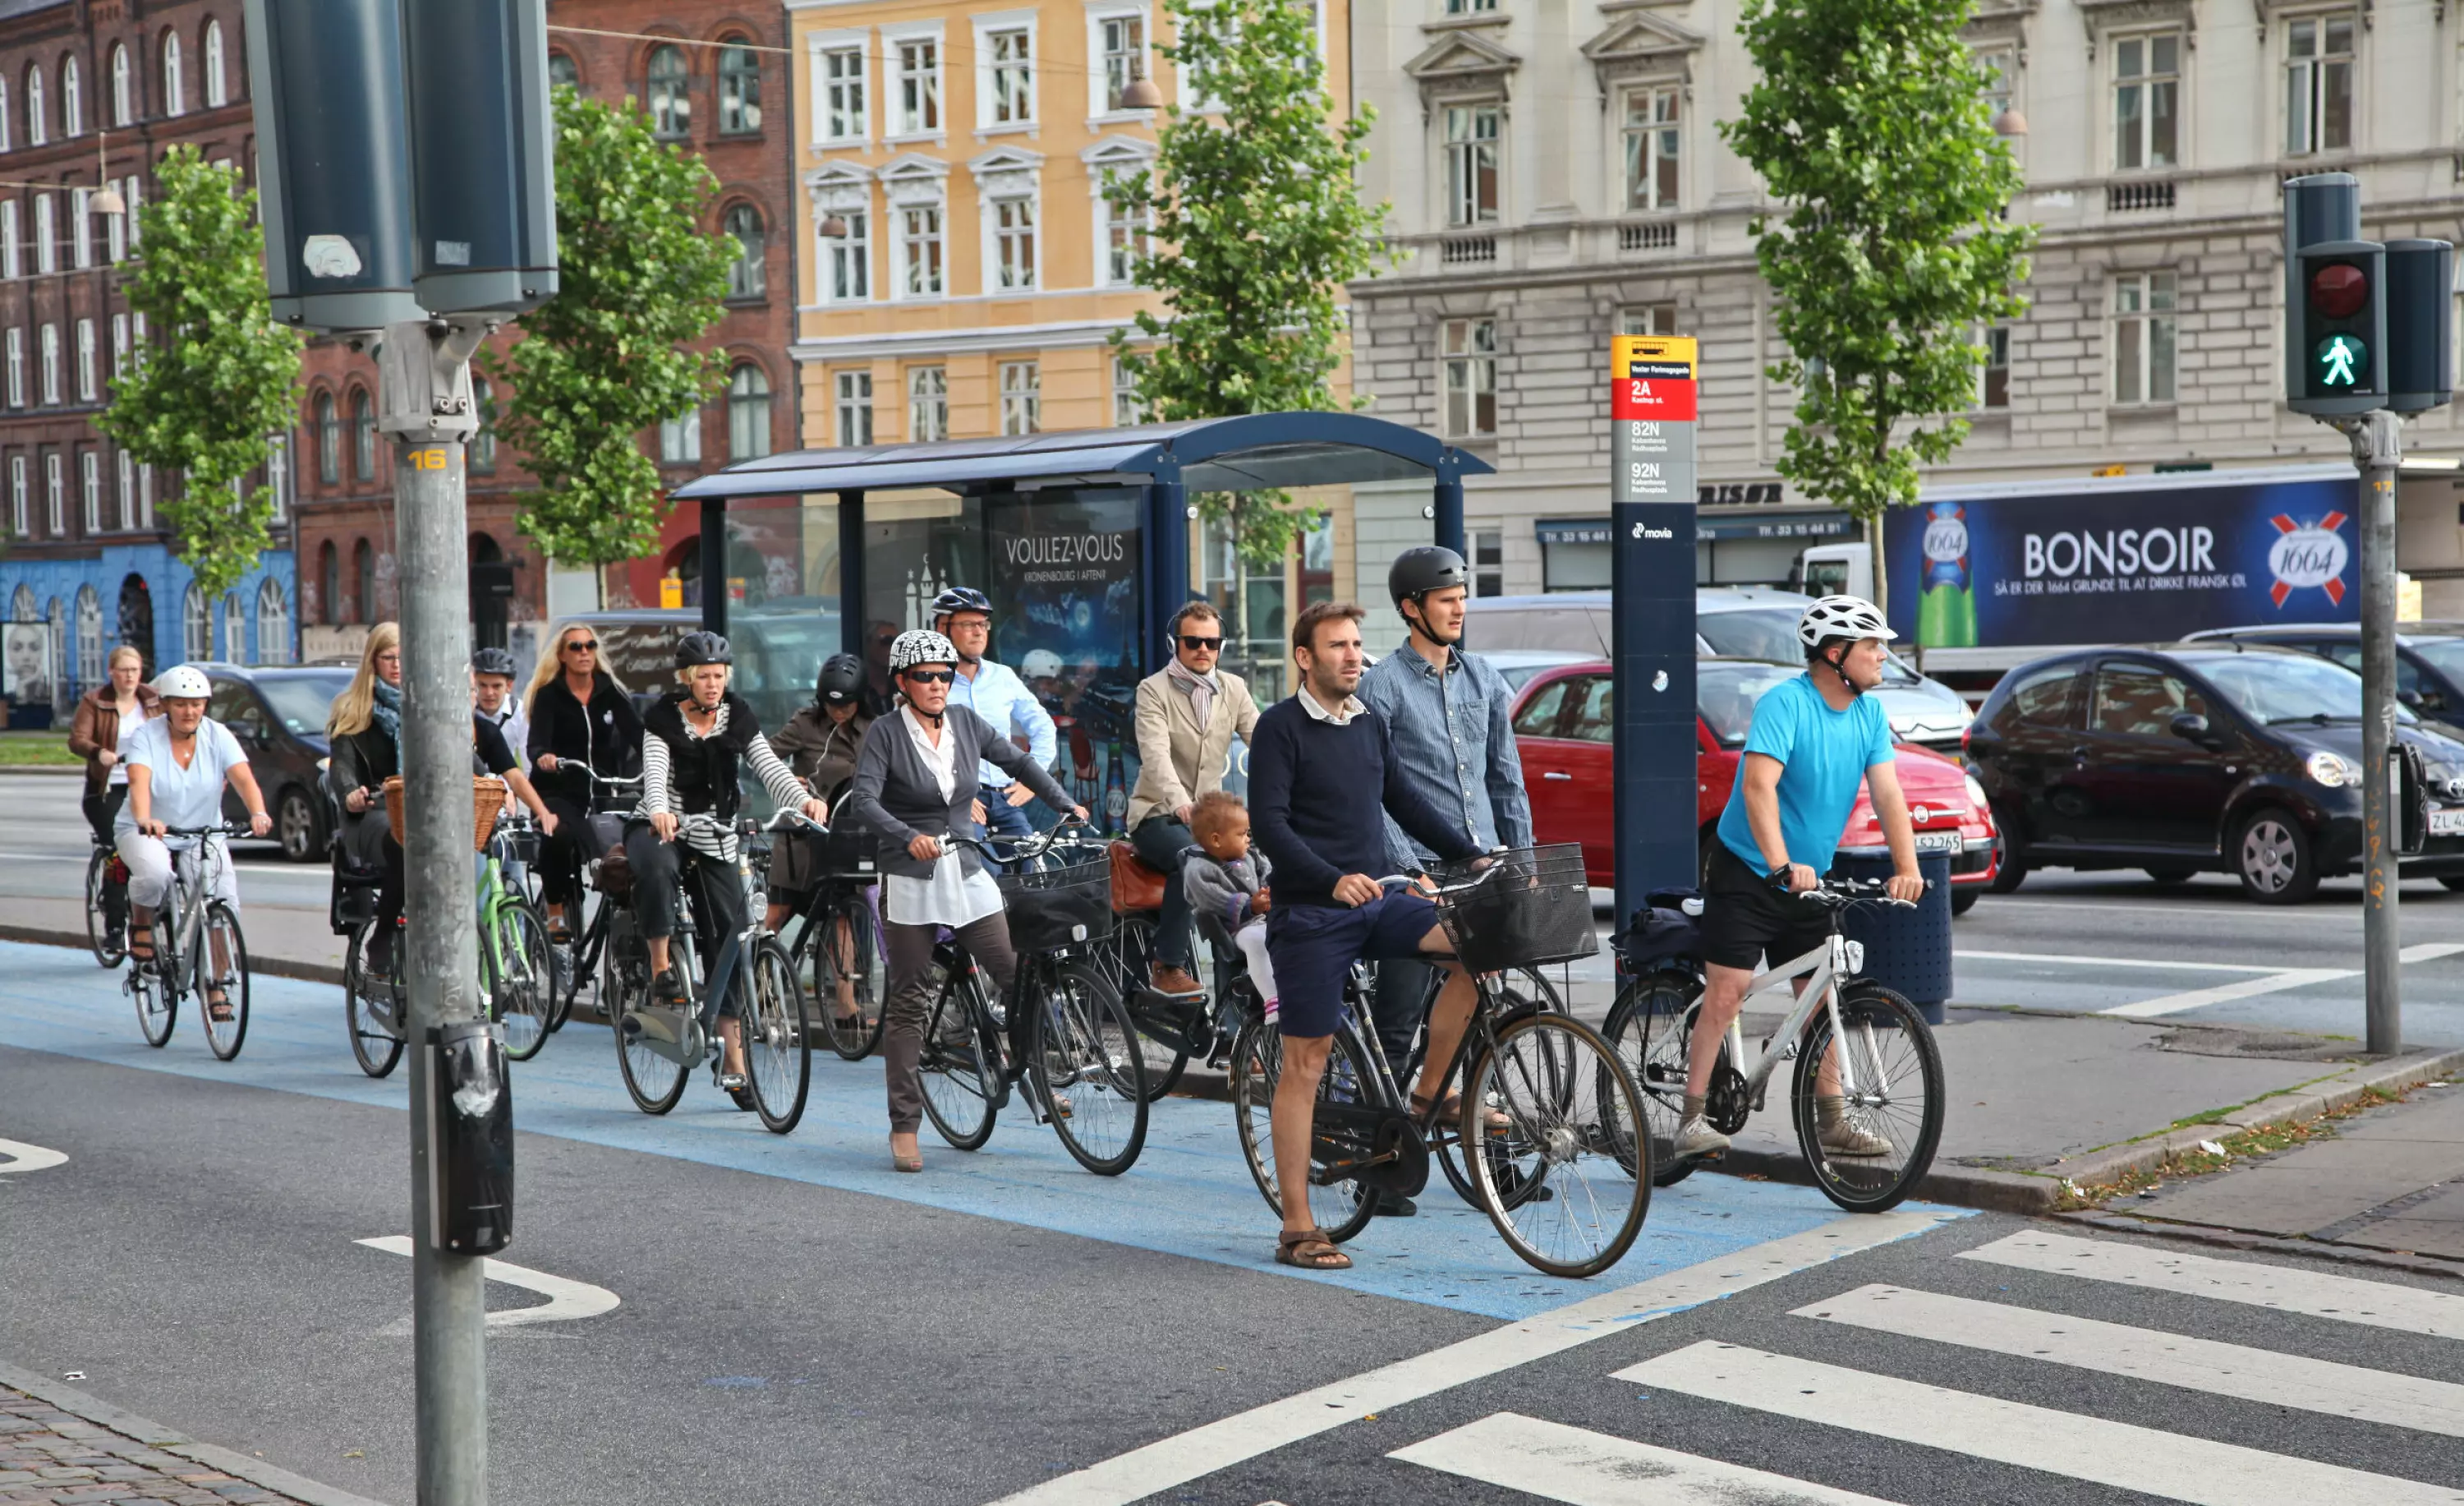 DANSKE TILSTANDER: Syklister venter på grønt lys i København. Foto: Shutterstock